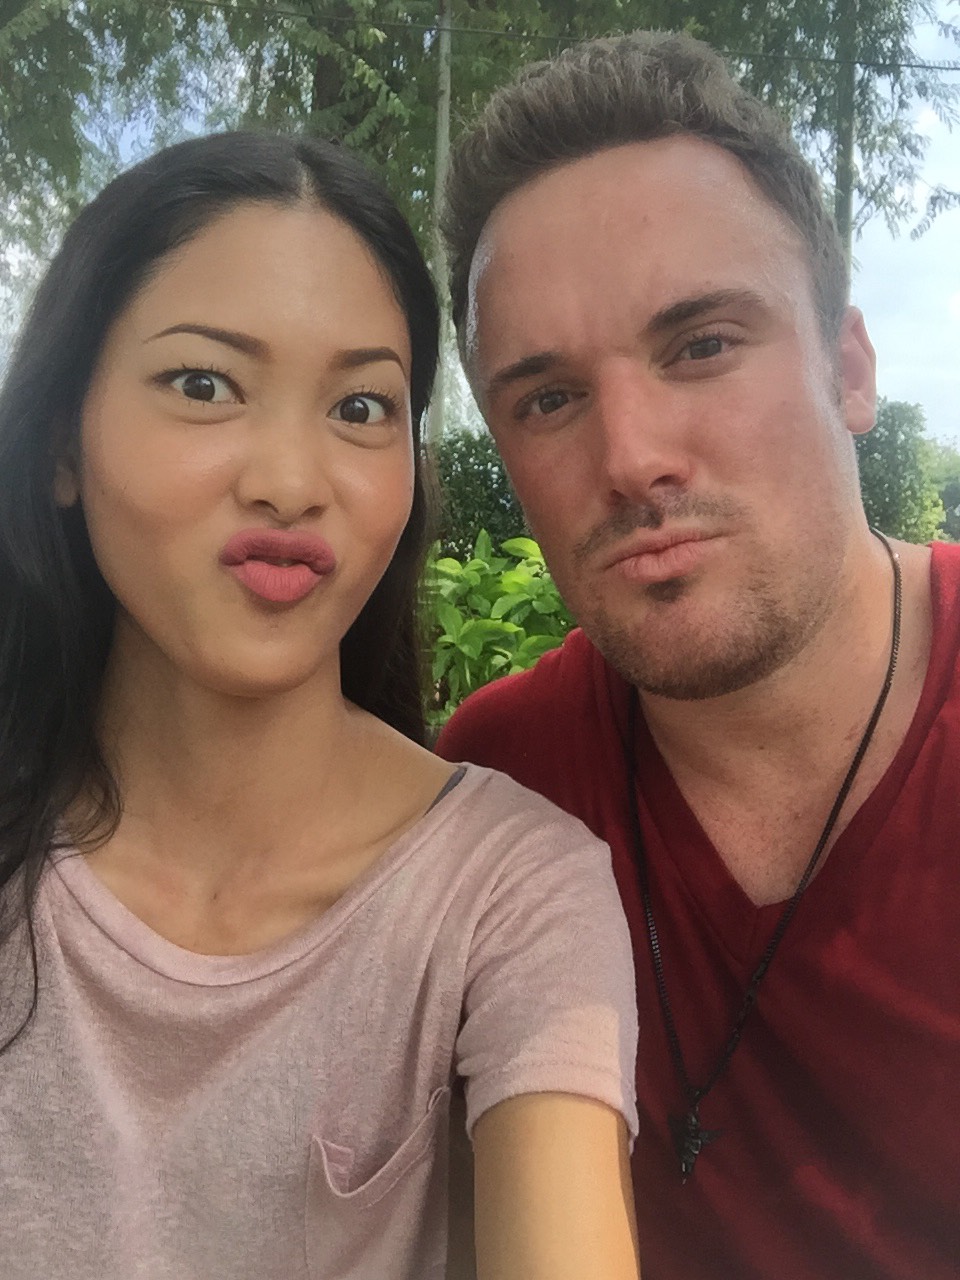 Thai Dating Dan The Bodybuilder In Thailand